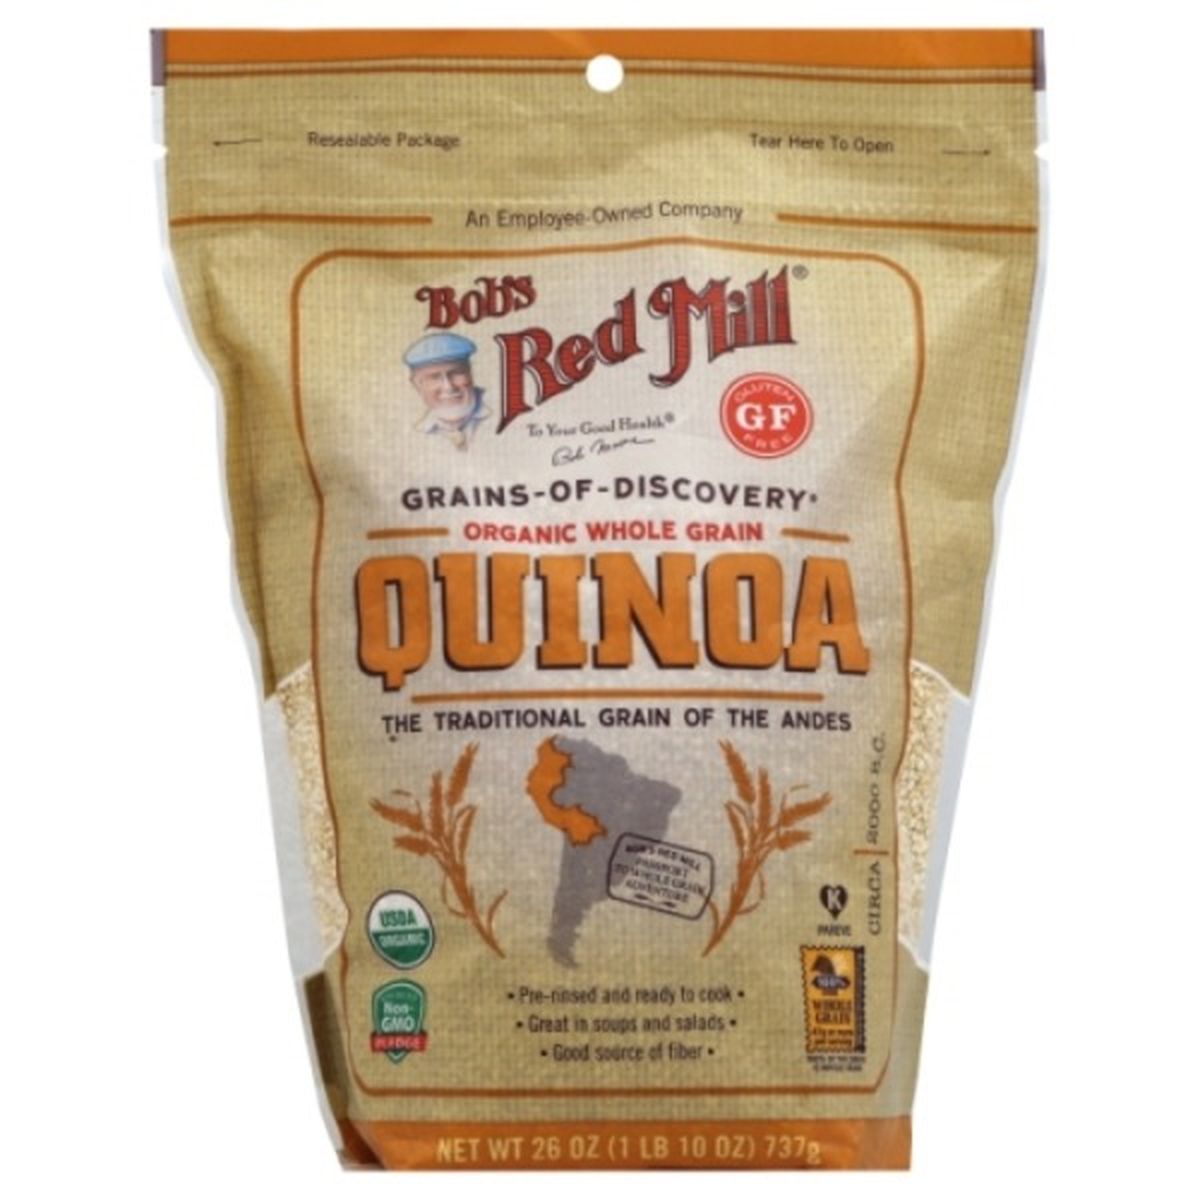 Calories in Bob's Red Mill Quinoa, Organic, Whole Grain